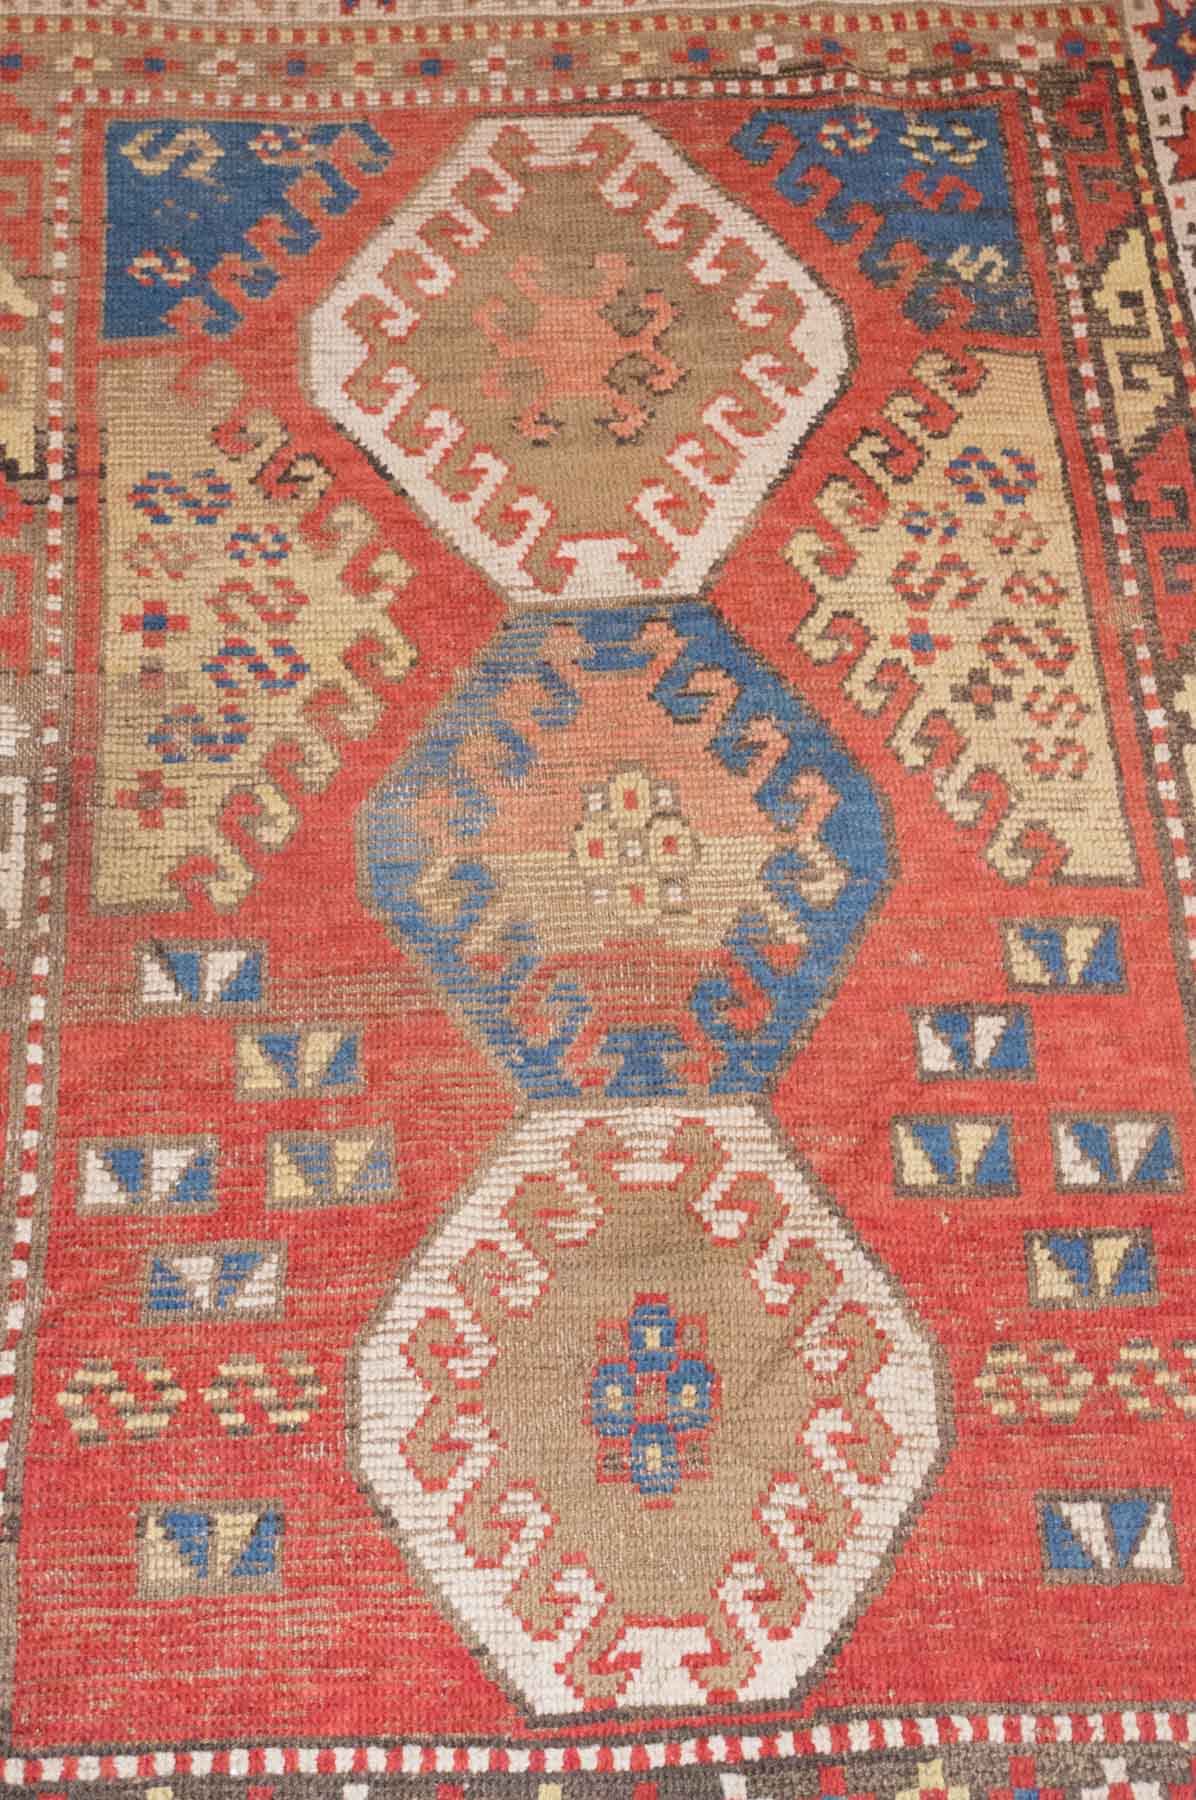 alter Orientalischer Teppich / Old oriental carpethandgeknüpft, ca. 195 cm x 133 cm /
tied by - Image 2 of 3